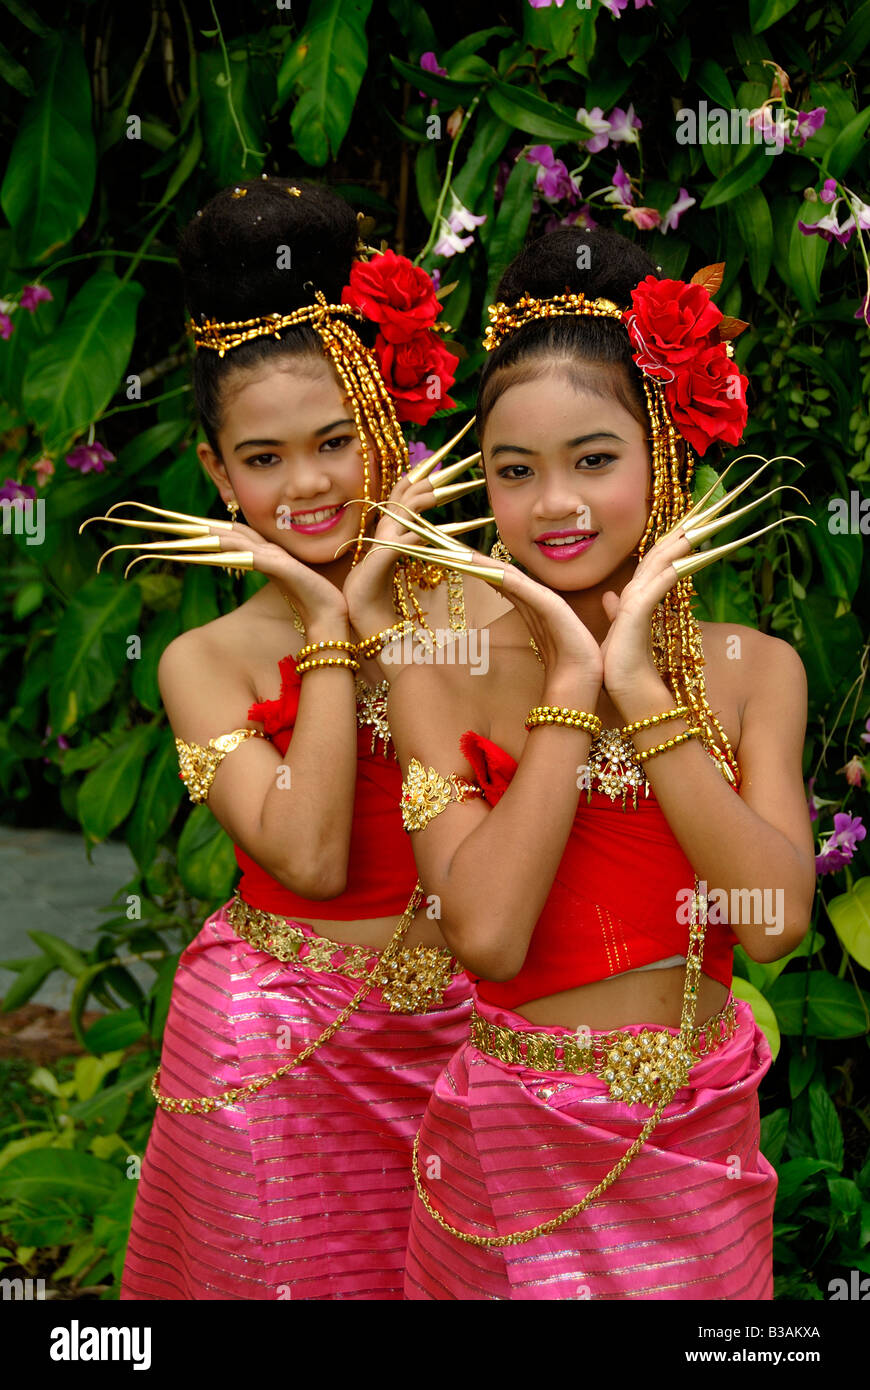 Junges Bangkok M Dchen Fotos Und Bildmaterial In Hoher Aufl Sung Alamy